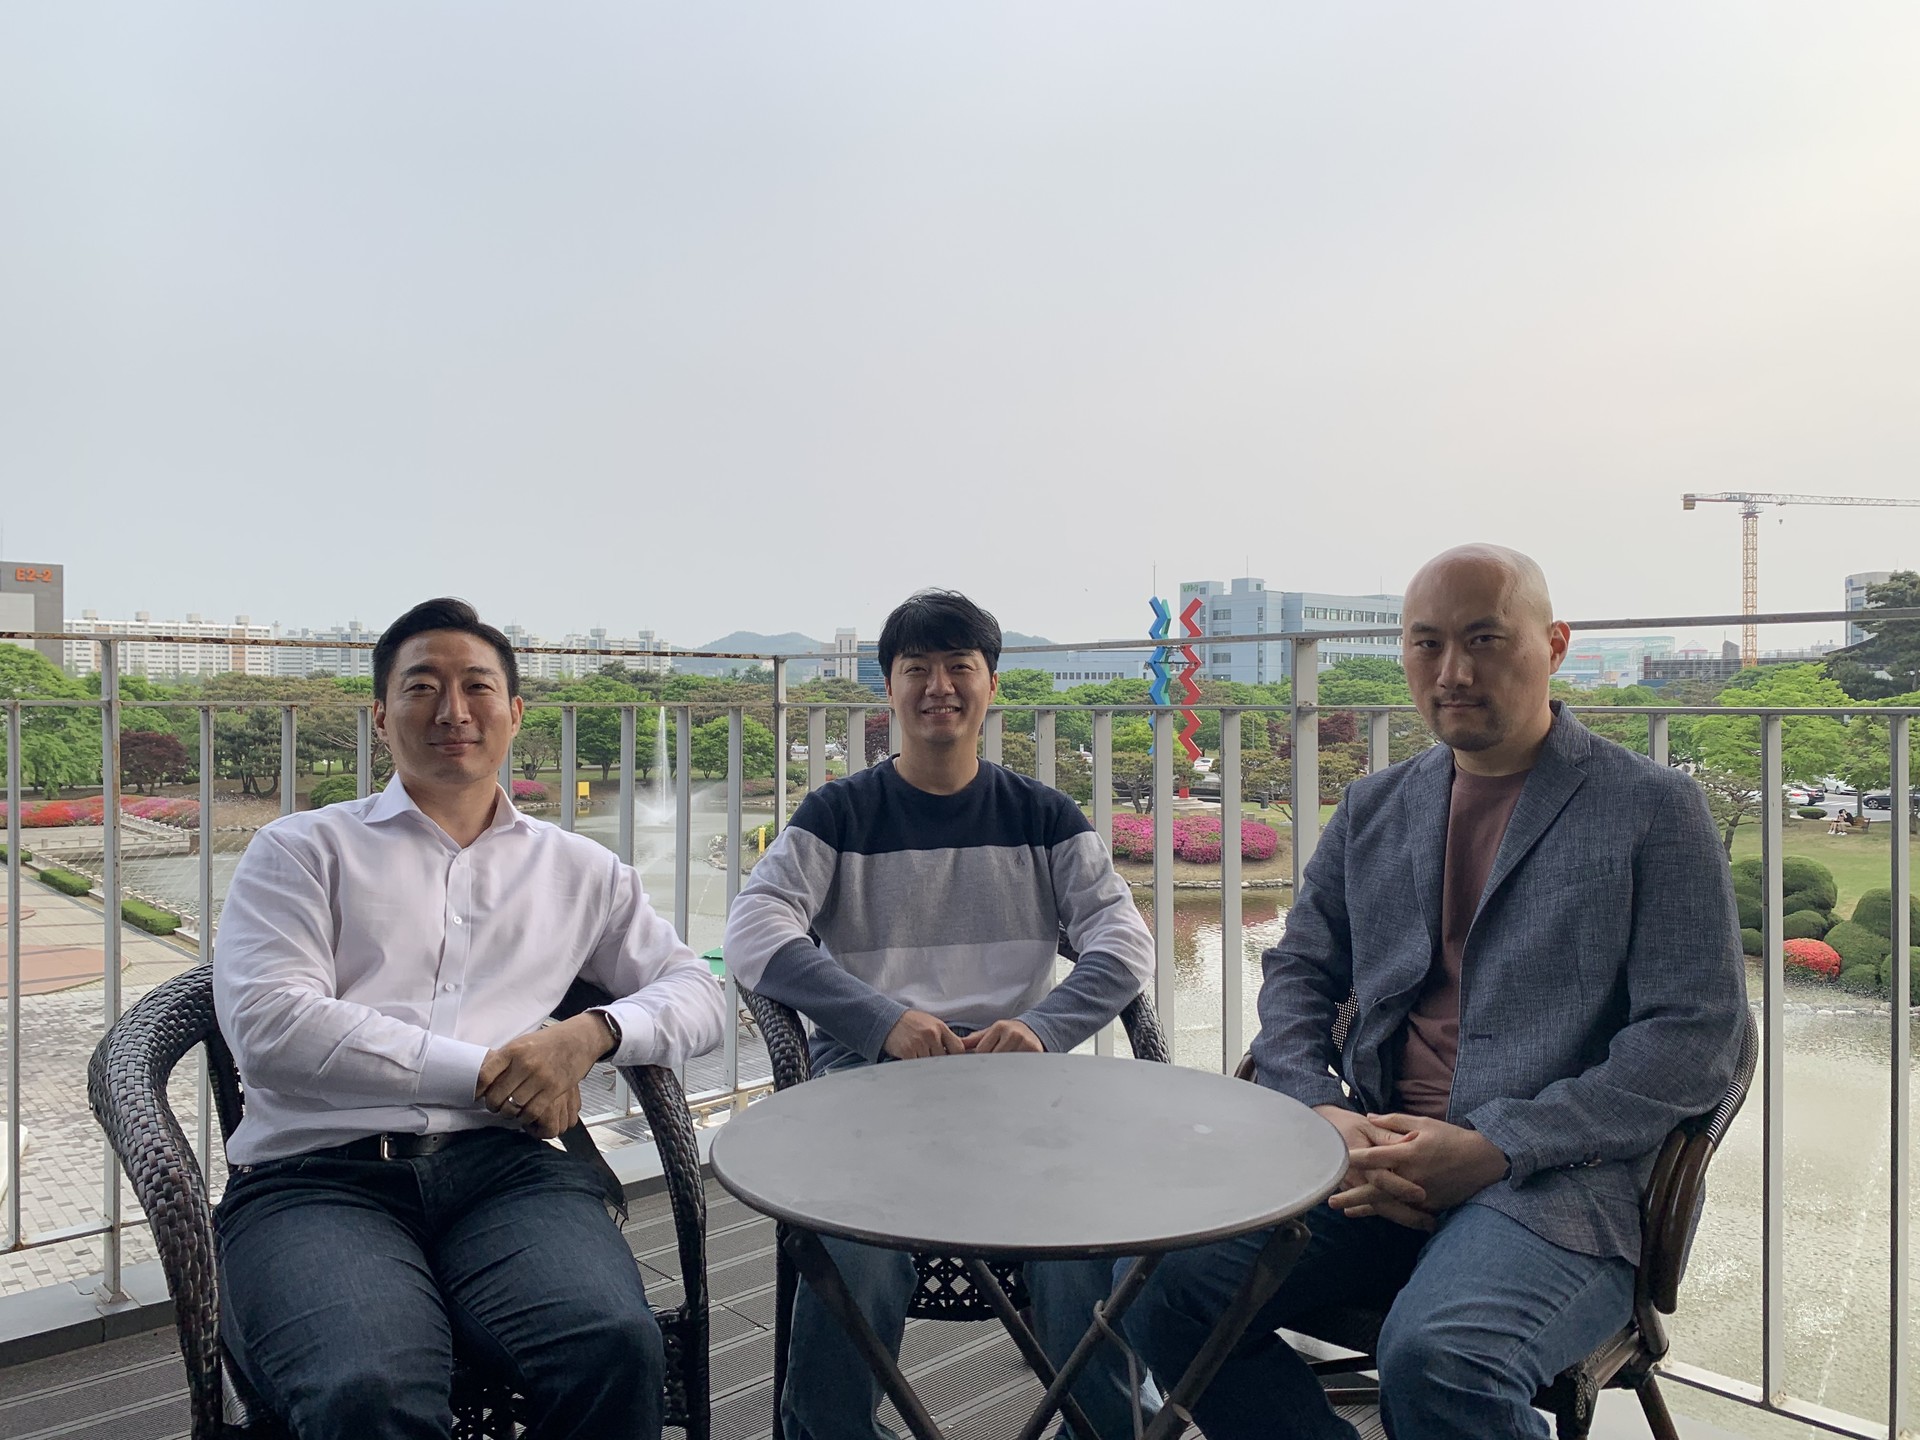 왼쪽부터 최윤섭, 엄태웅, 권창현 작가 (©김서경 기자)